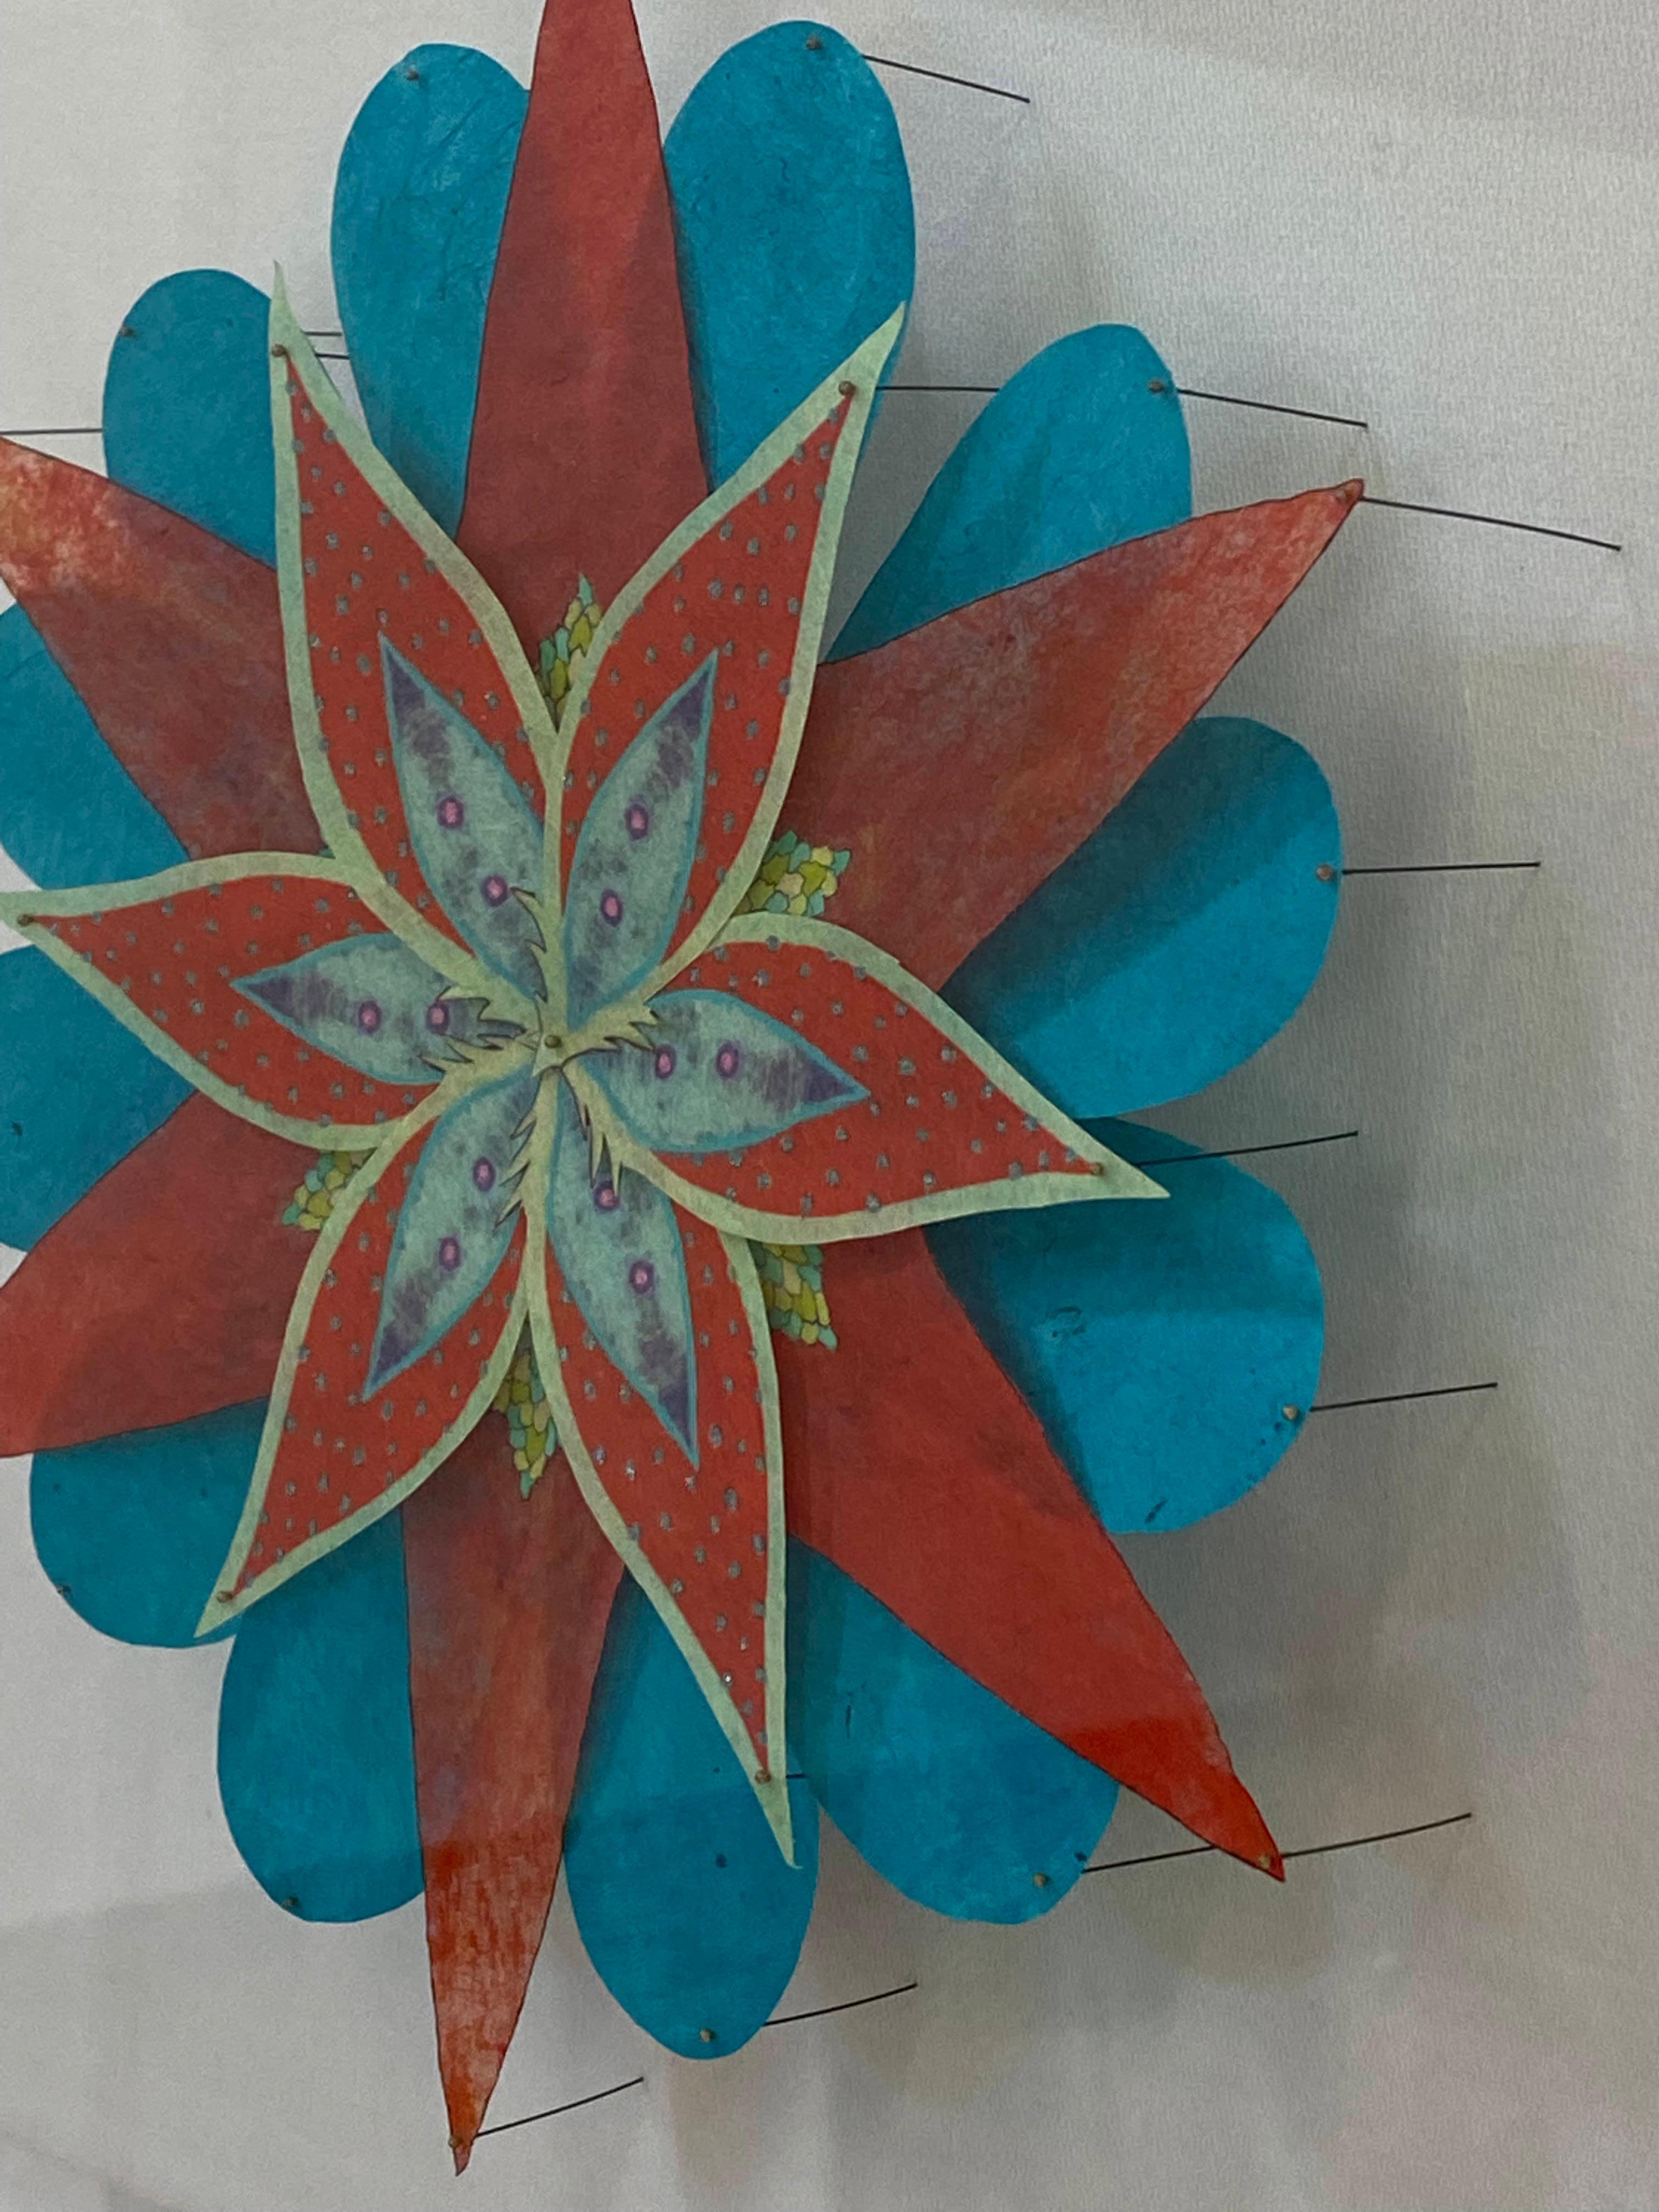 Eine leuchtende und farbenfrohe Papierskulptur einer fantastischen botanischen Form in leuchtendem Teeblau, rötlichem Orange und hellem Limonengrün und Gelb. Bestehend aus handkolorierten Radierungen auf handgeschnittenem, handgeschöpftem